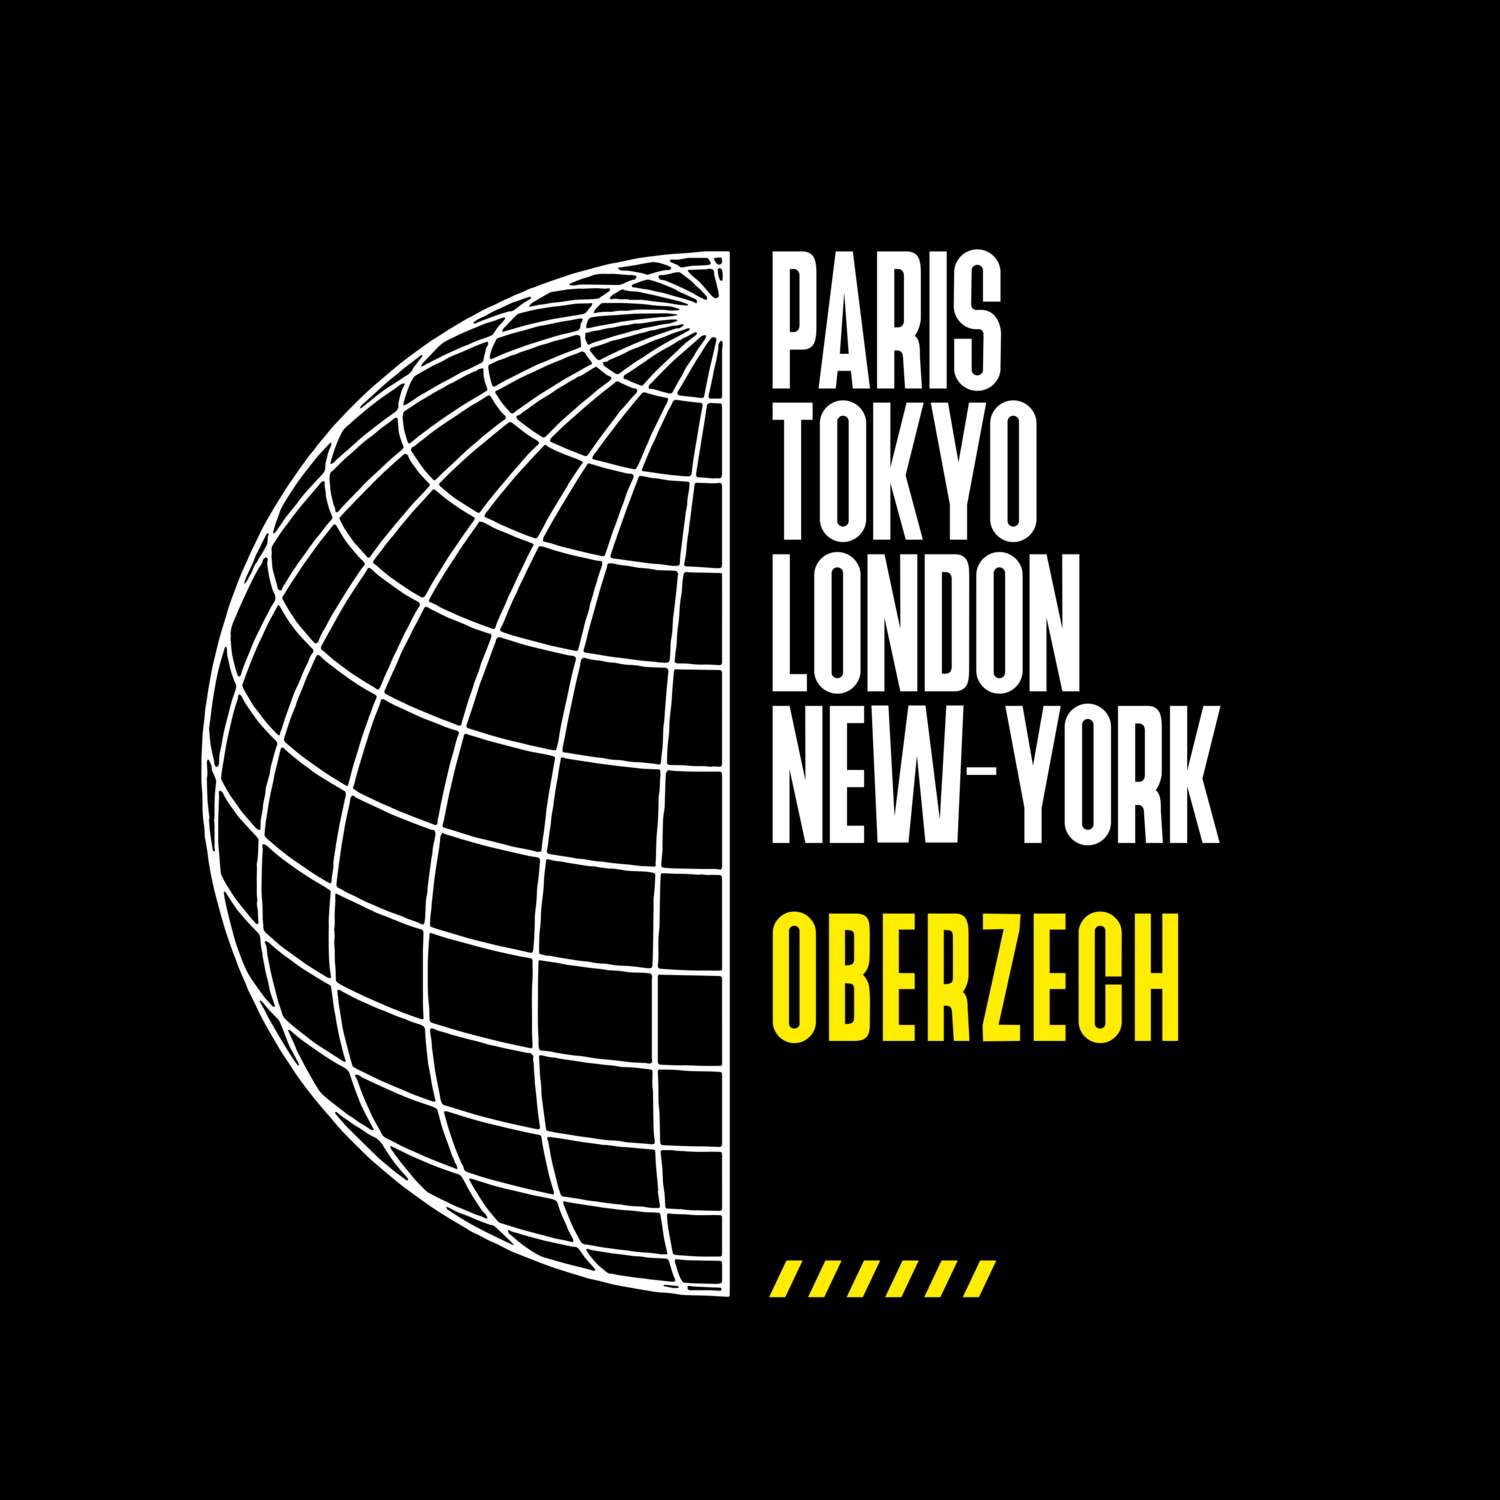 Oberzech T-Shirt »Paris Tokyo London«